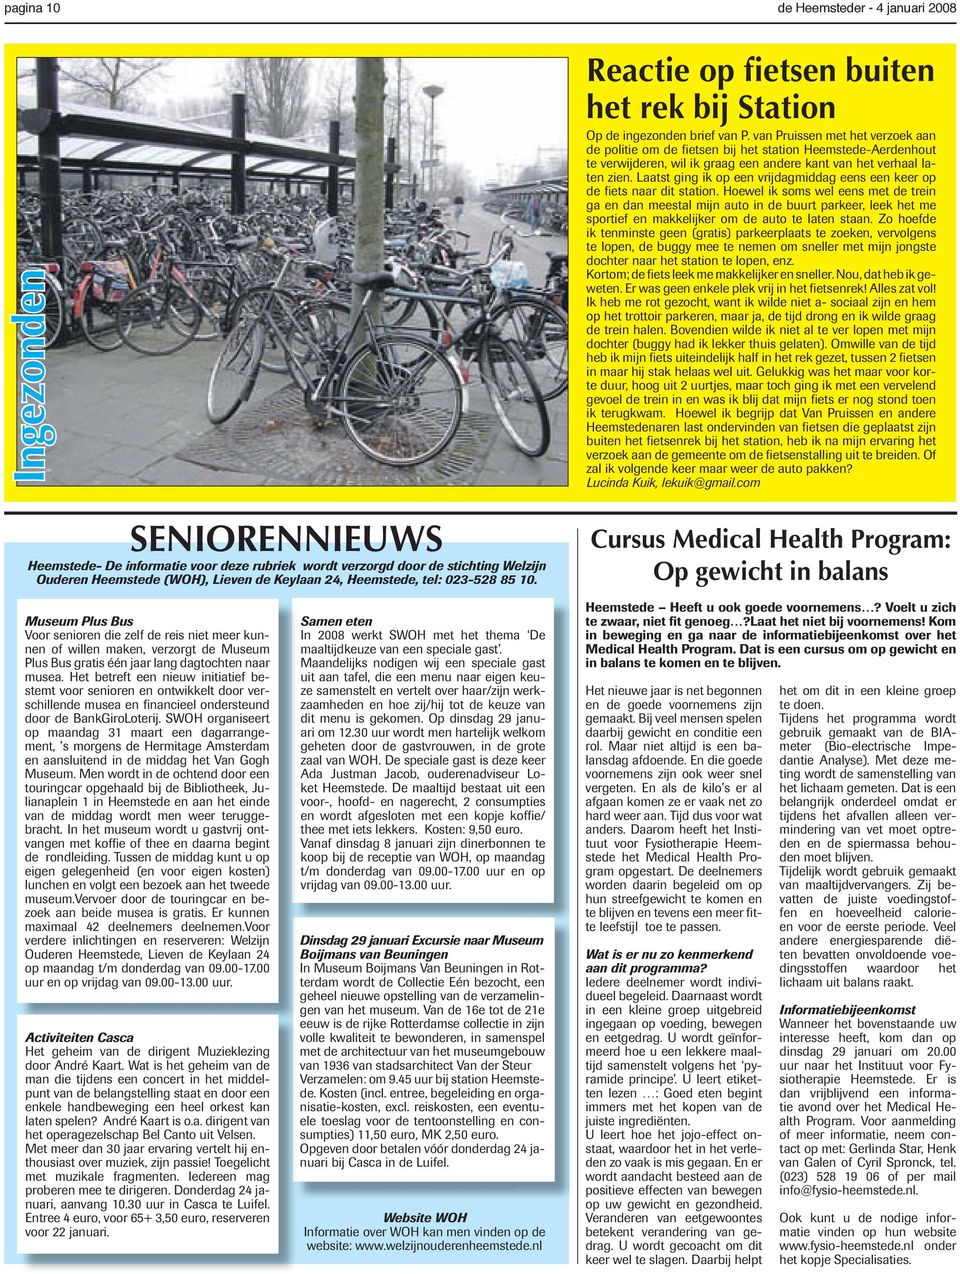 van Pruissen met het verzoek aan de politie om de fietsen bij het station Heemstede-Aerdenhout te verwijderen, wil ik graag een andere kant van het verhaal laten zien.